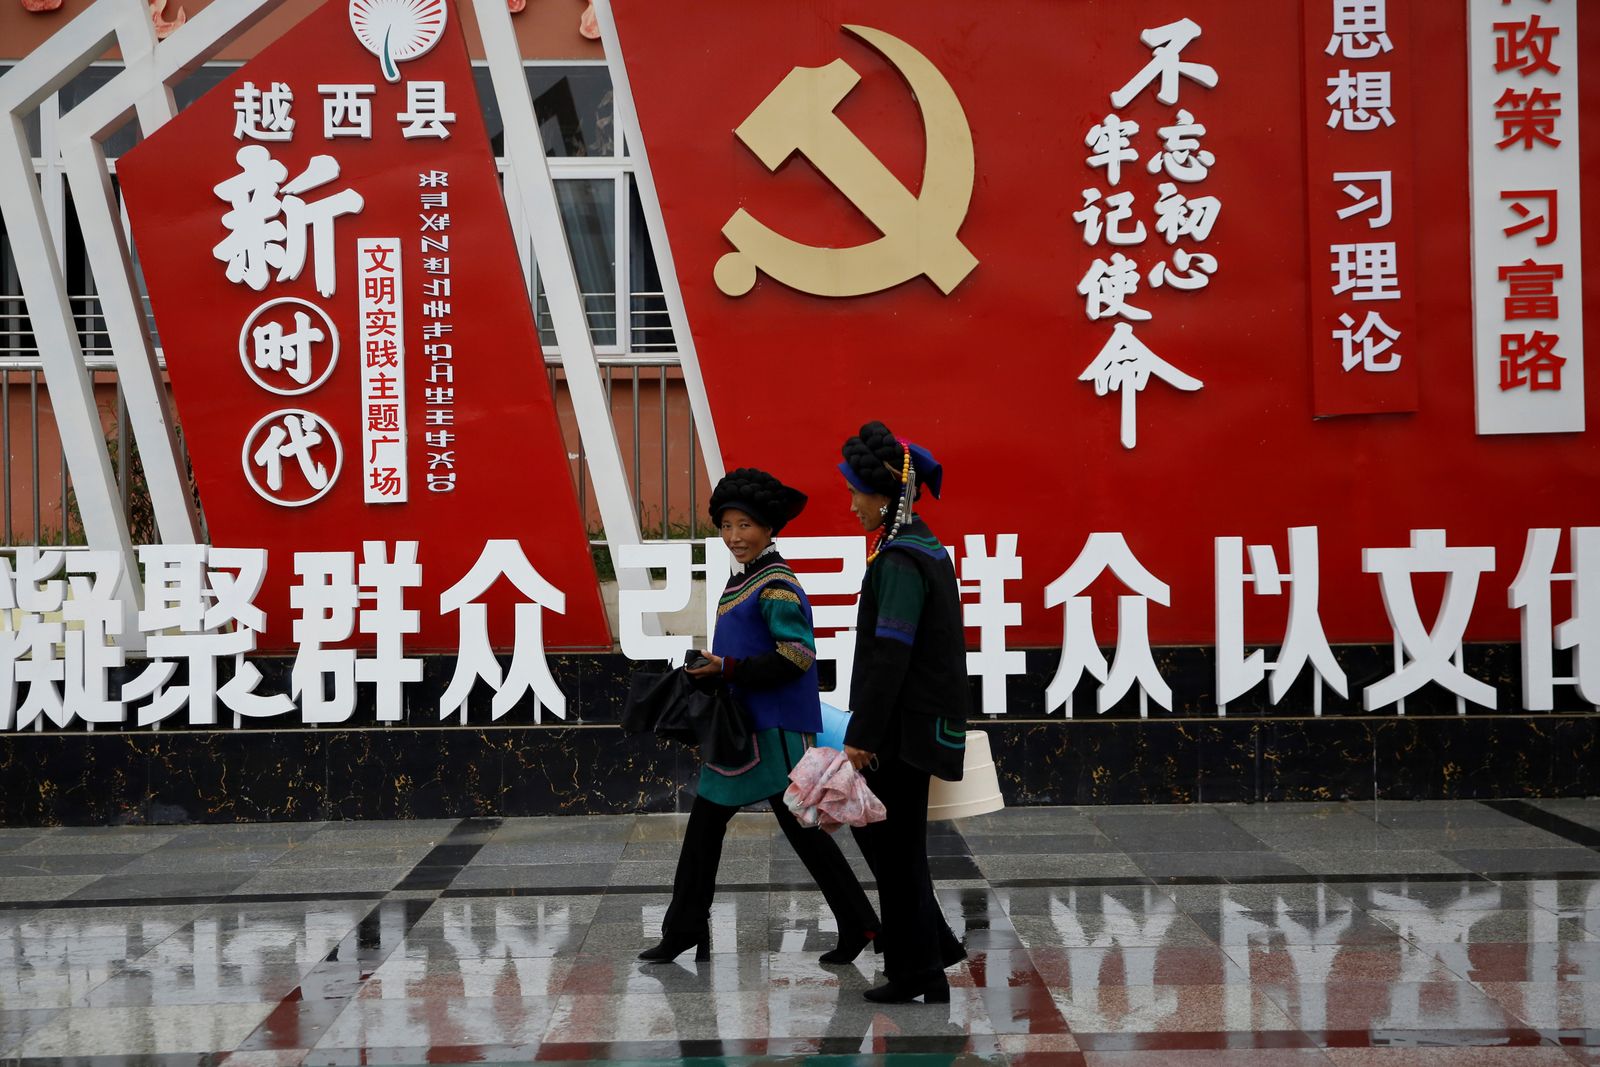 تسيران أمام شعار للحزب الشيوعي الصيني في مقاطعة سيشوان - 11 سبتمبر 2020 - REUTERS